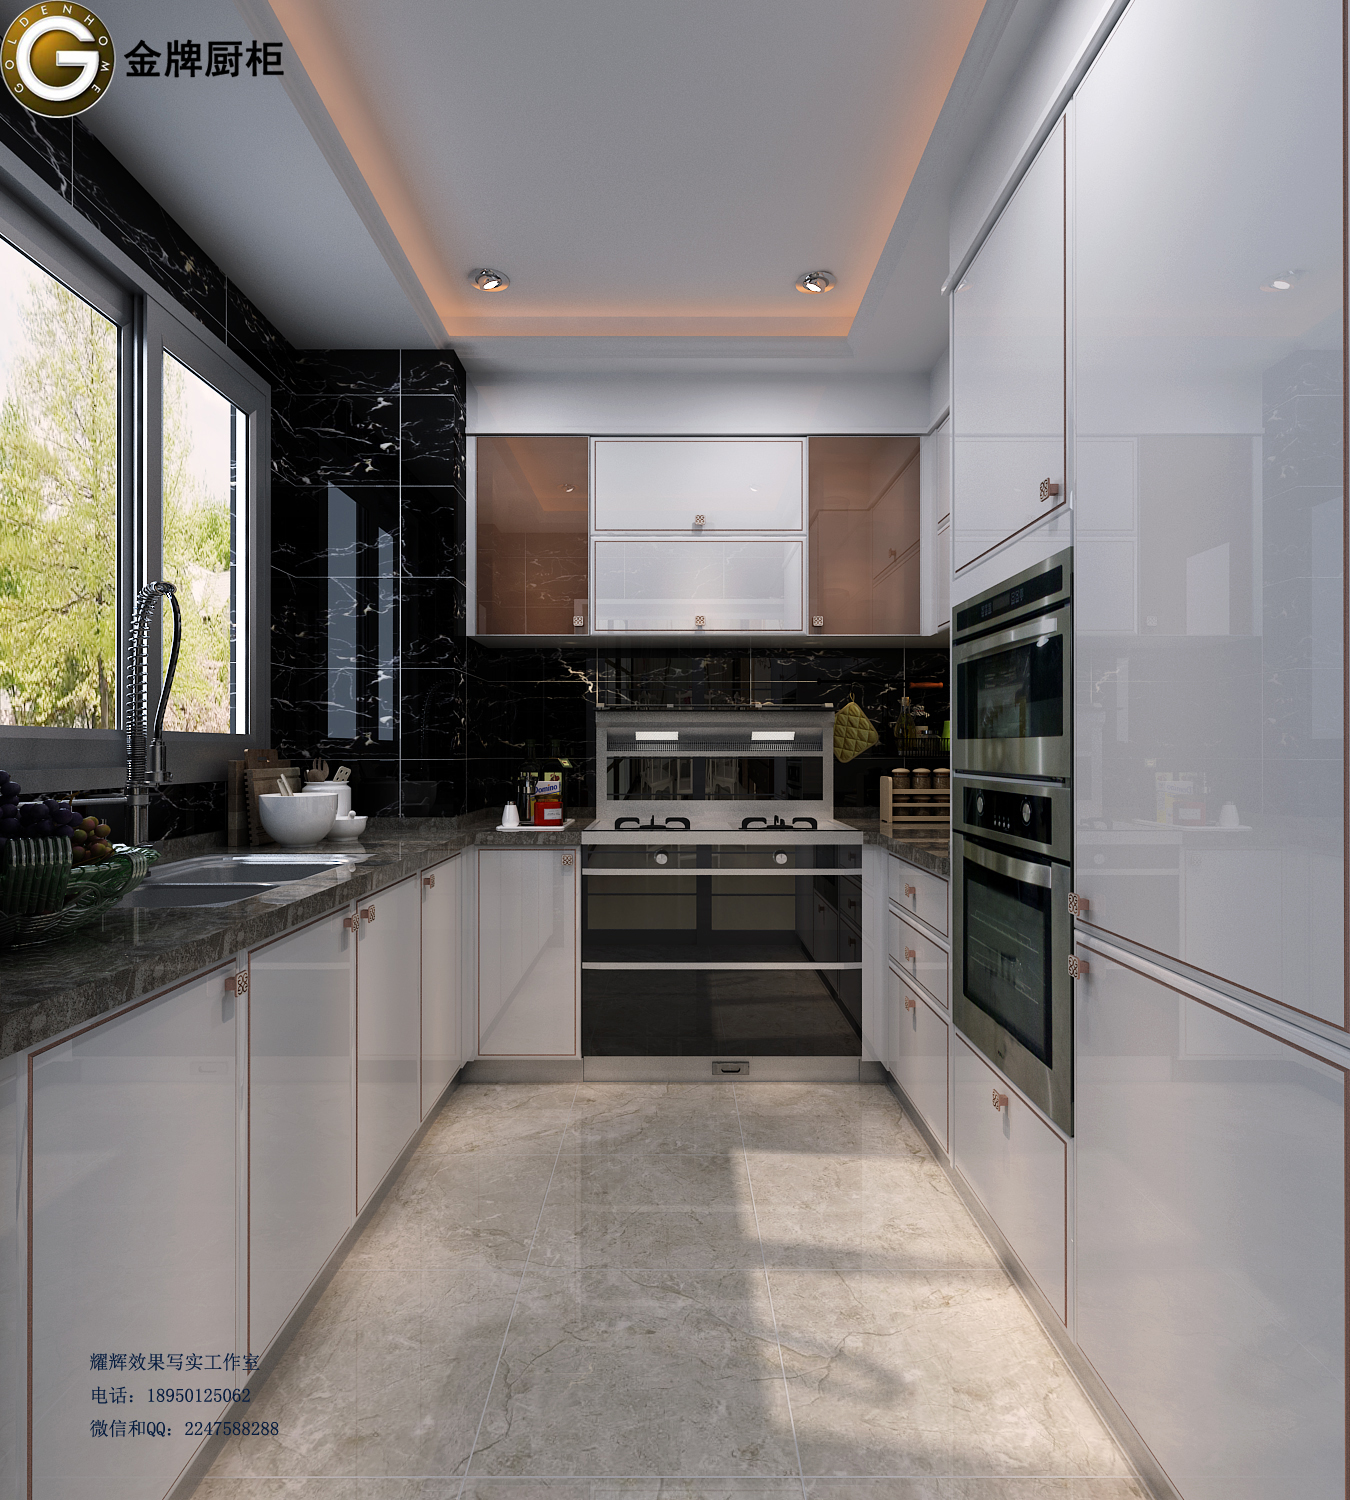 已完成 现代风格烤漆厨房橱柜-室内设计-拓者设计吧